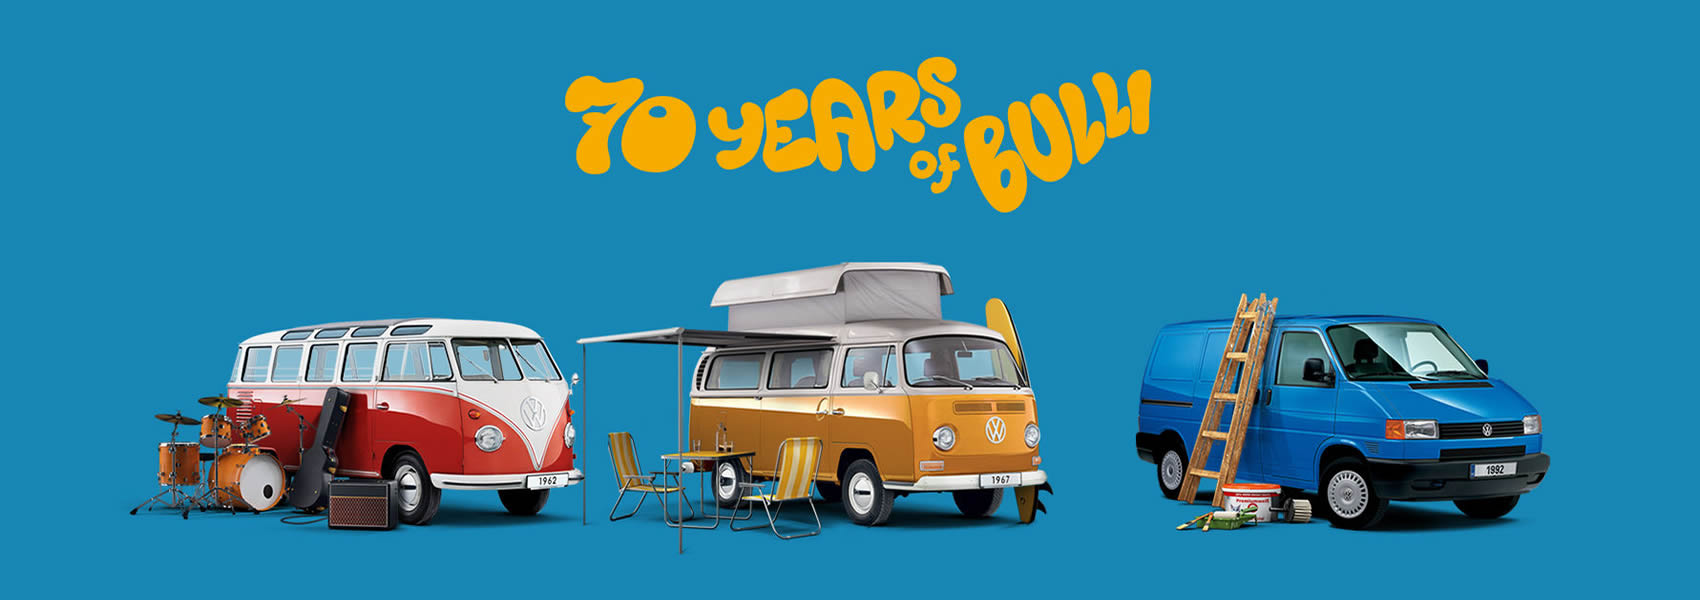 Volkswagen Užitkové vozy - 70 let Bulli